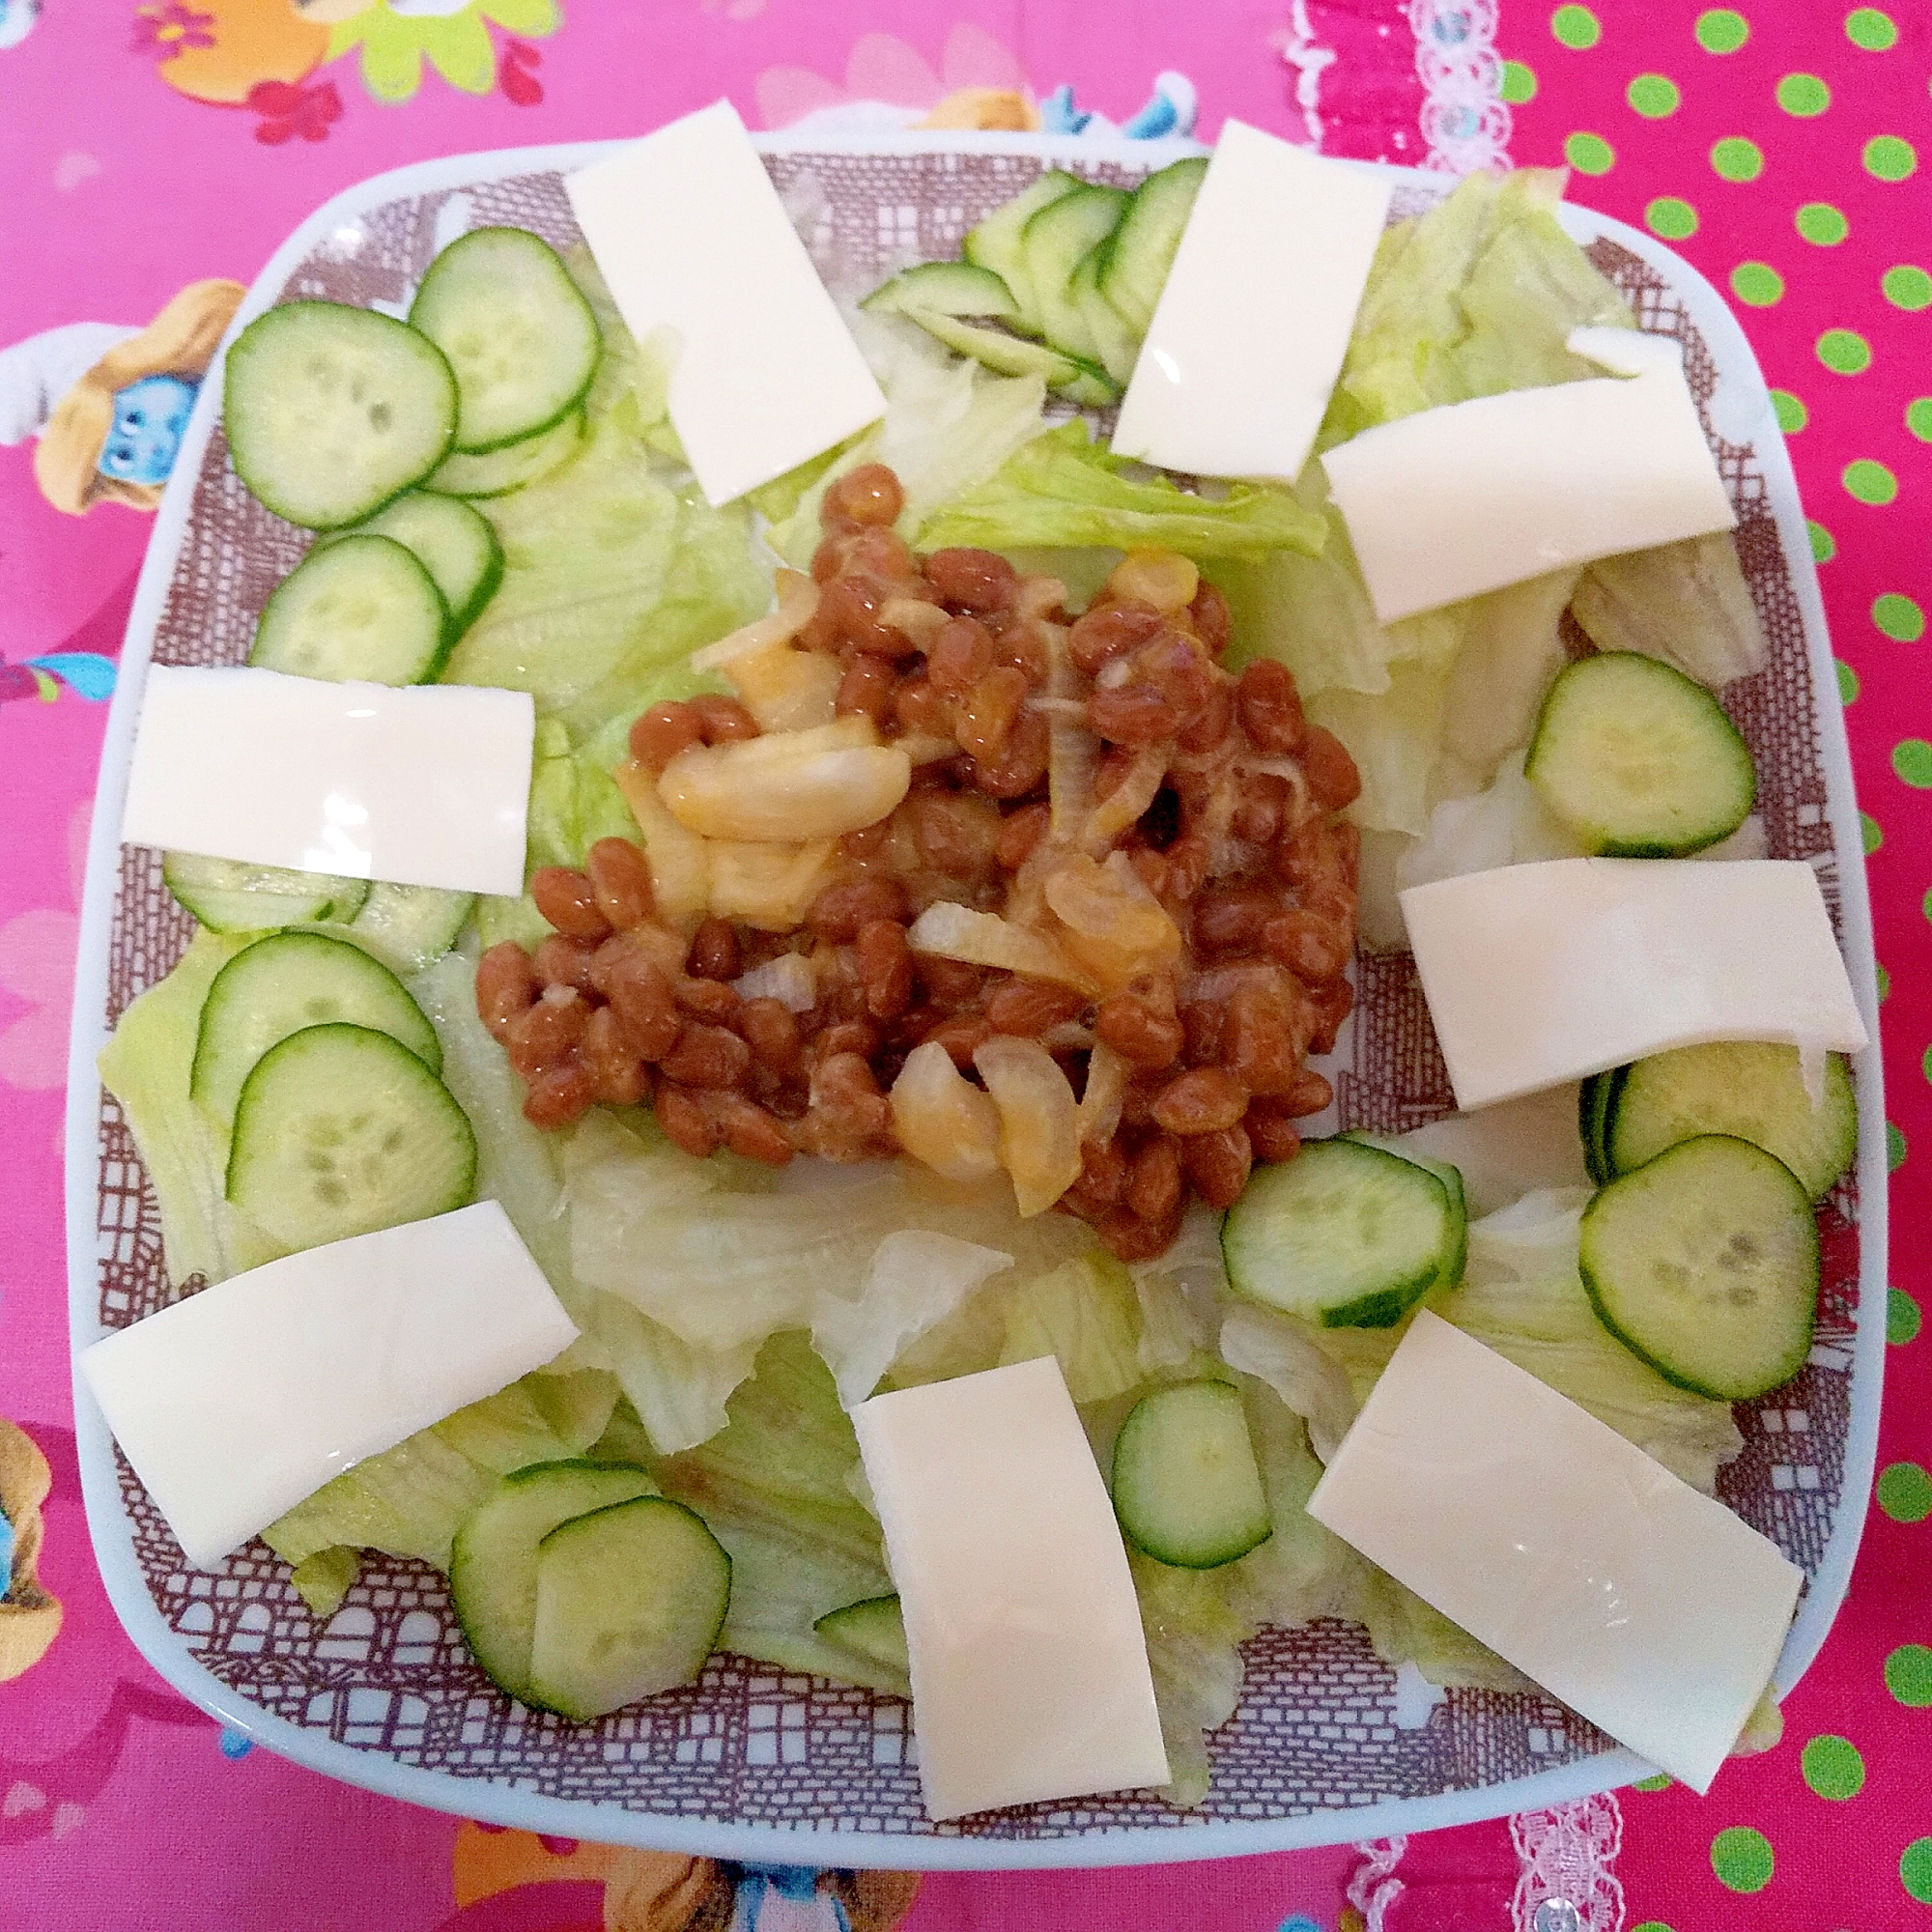 納豆と生野菜サラダ